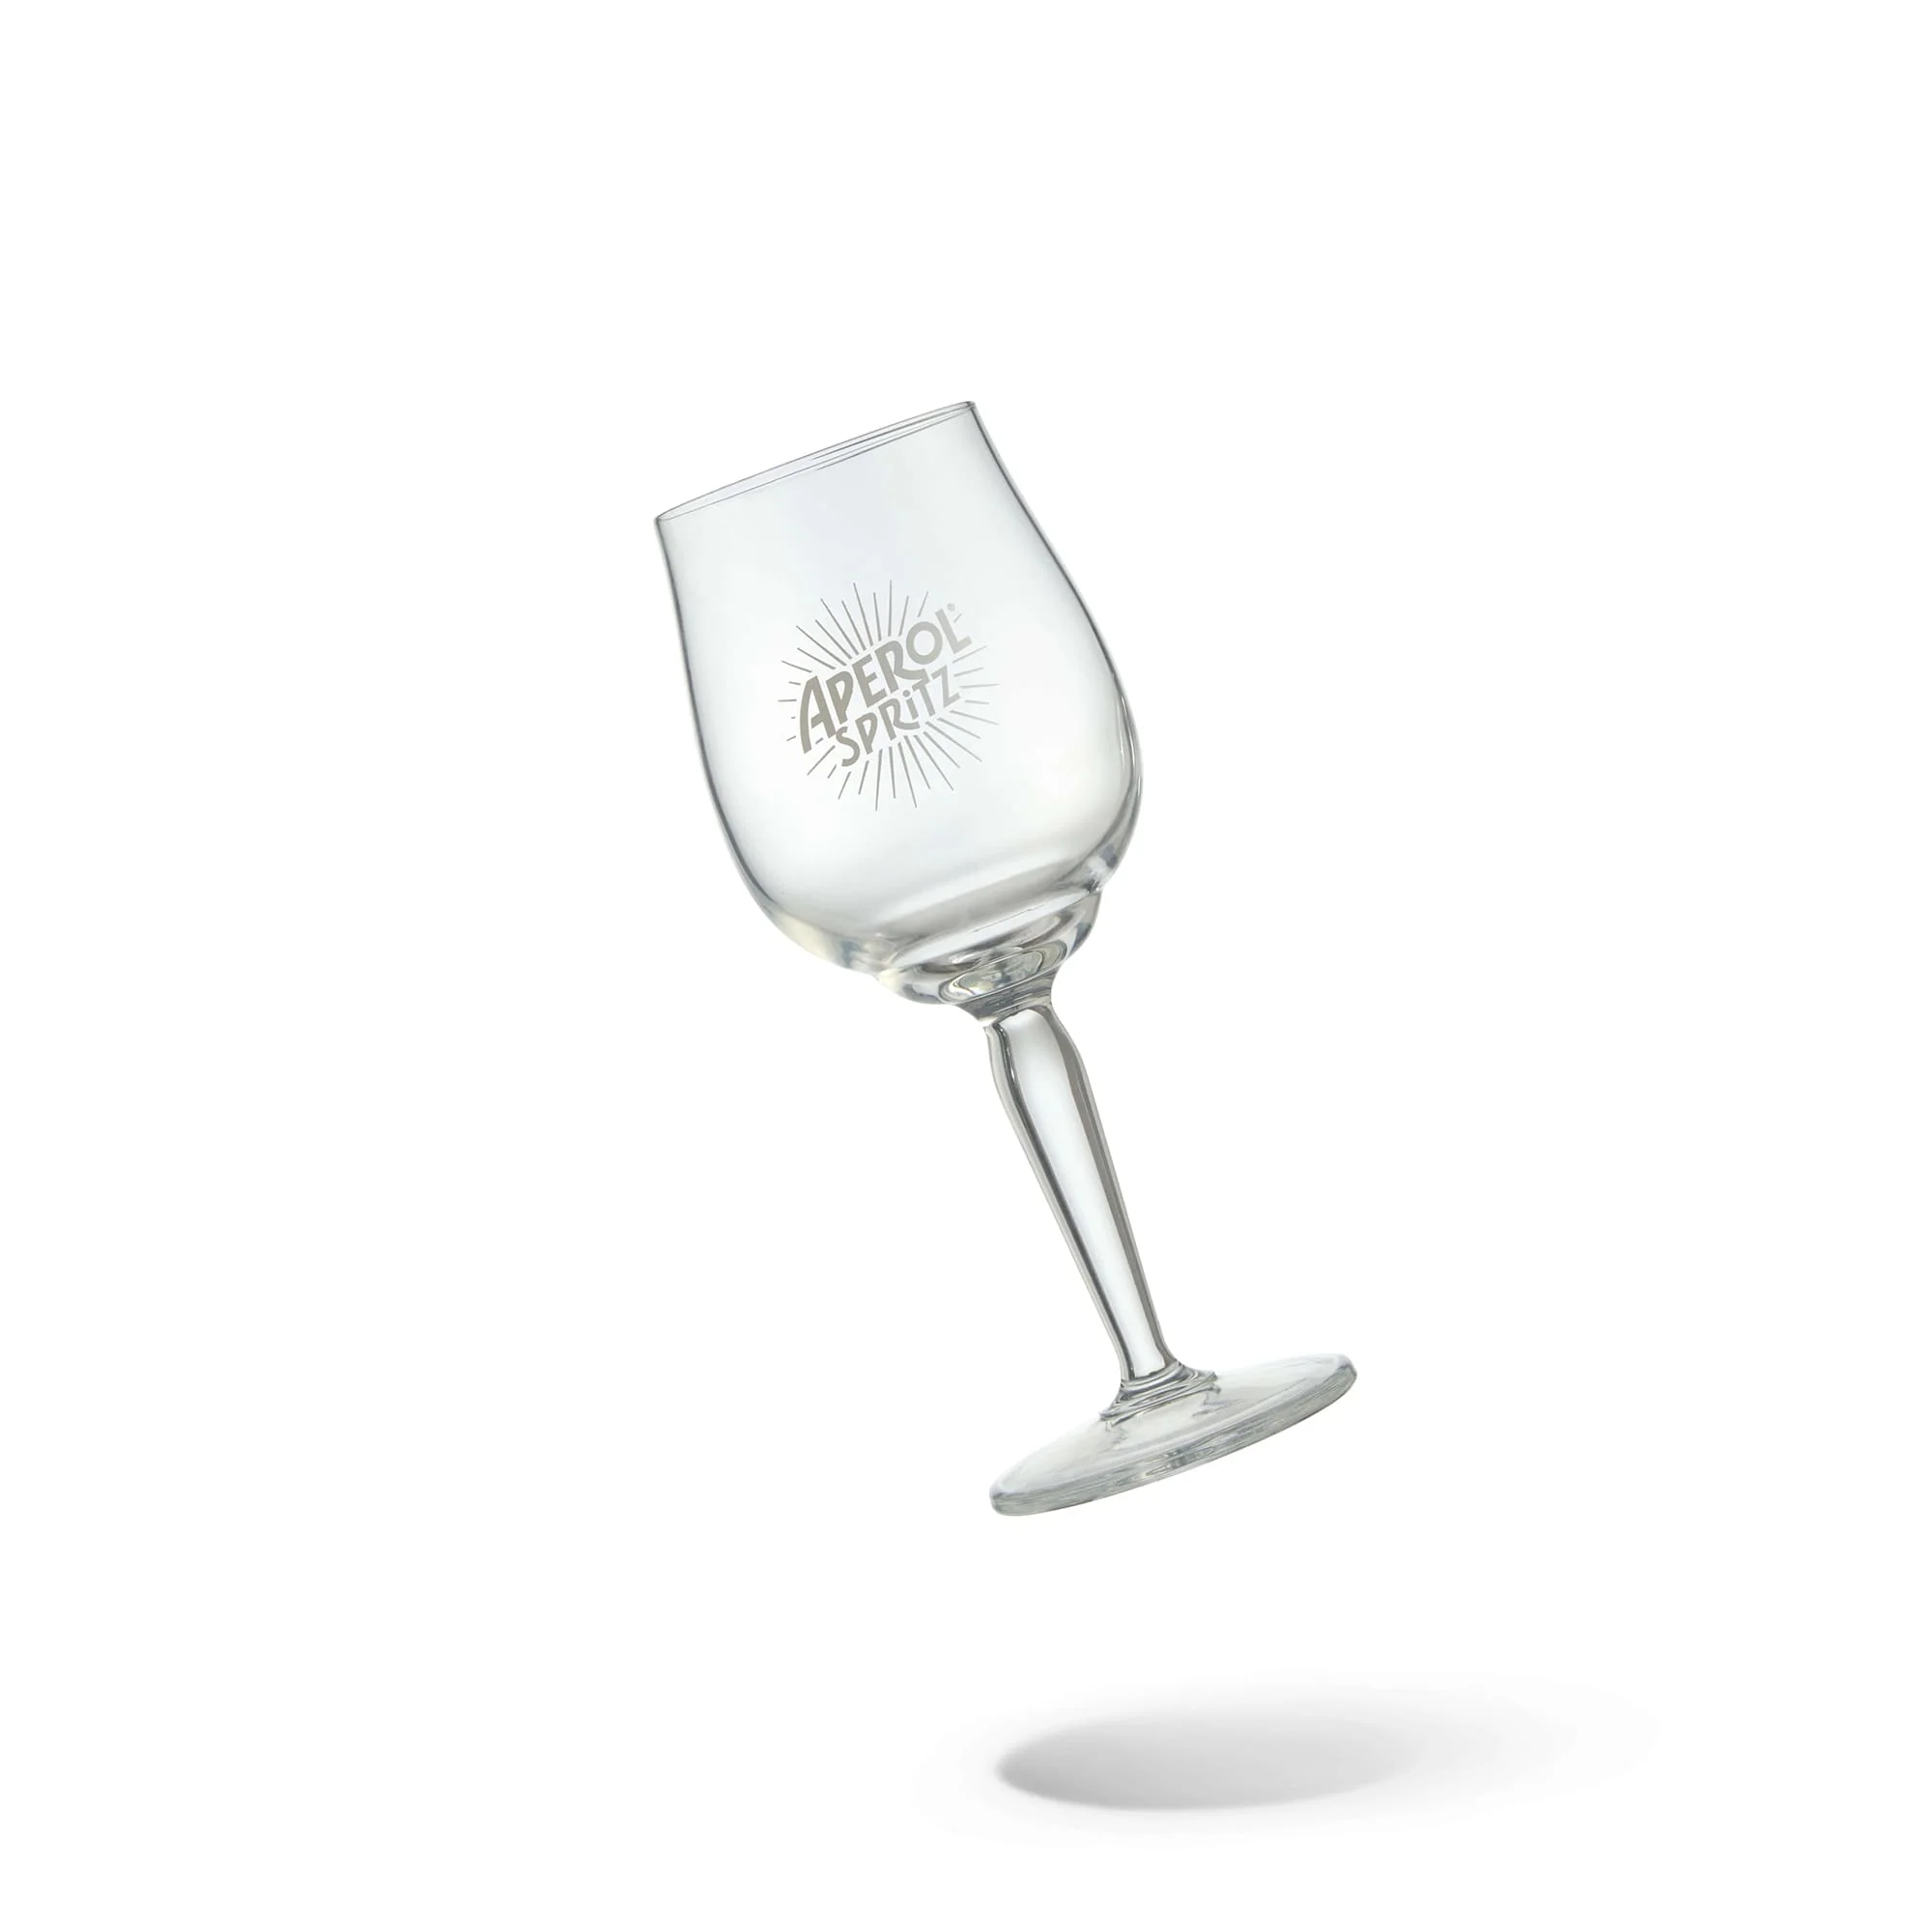 APEROL SPRITZ 6 SIGNATURE GLASSES